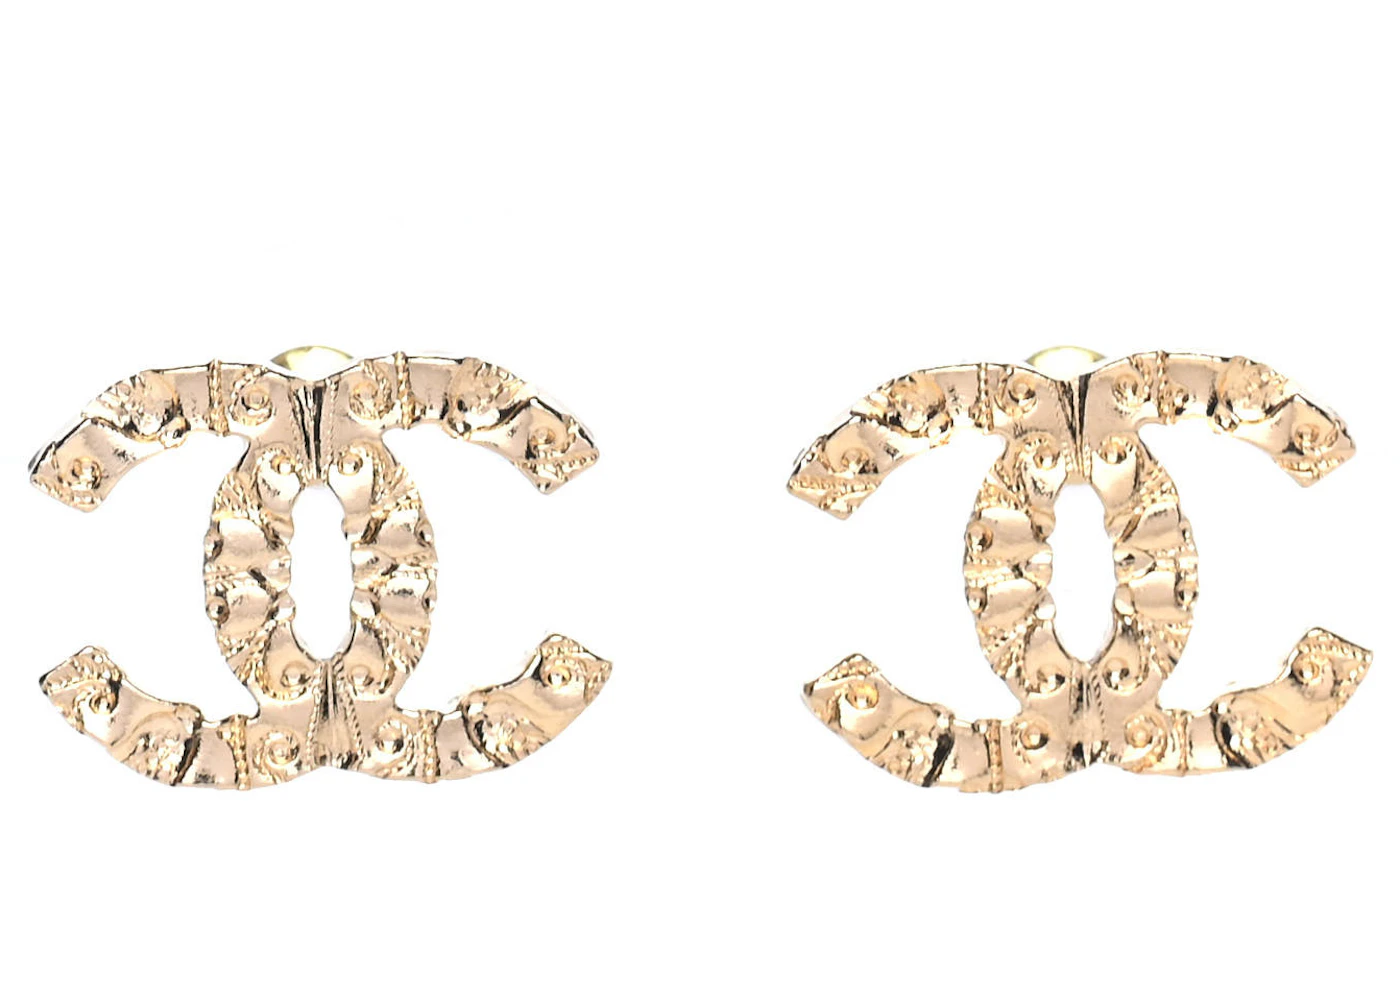 Cc earrings Chanel Gold in Metal - 36036455